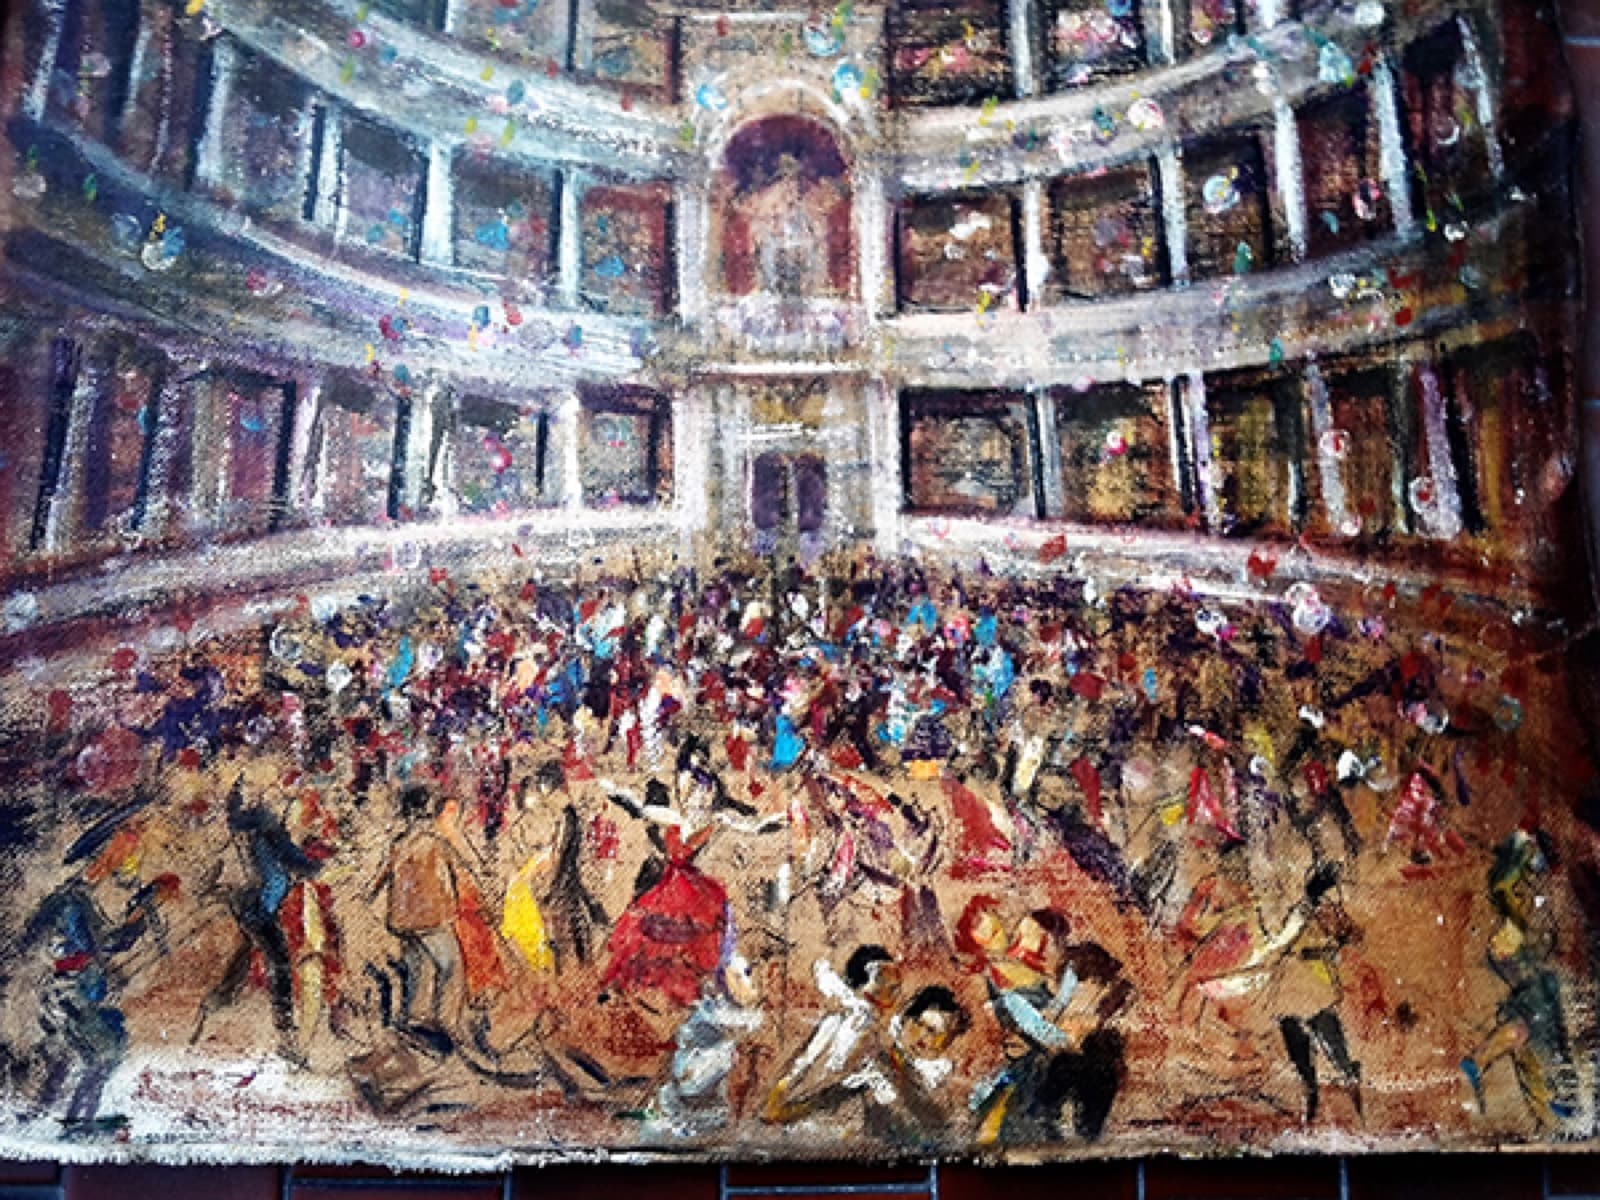 Ballo al Teatro Magnani (particolare), Ettore Ponzi, olio su cartone, raccolta "Ambrogio Ponzi", anni '20 o primi anni '30 del '900